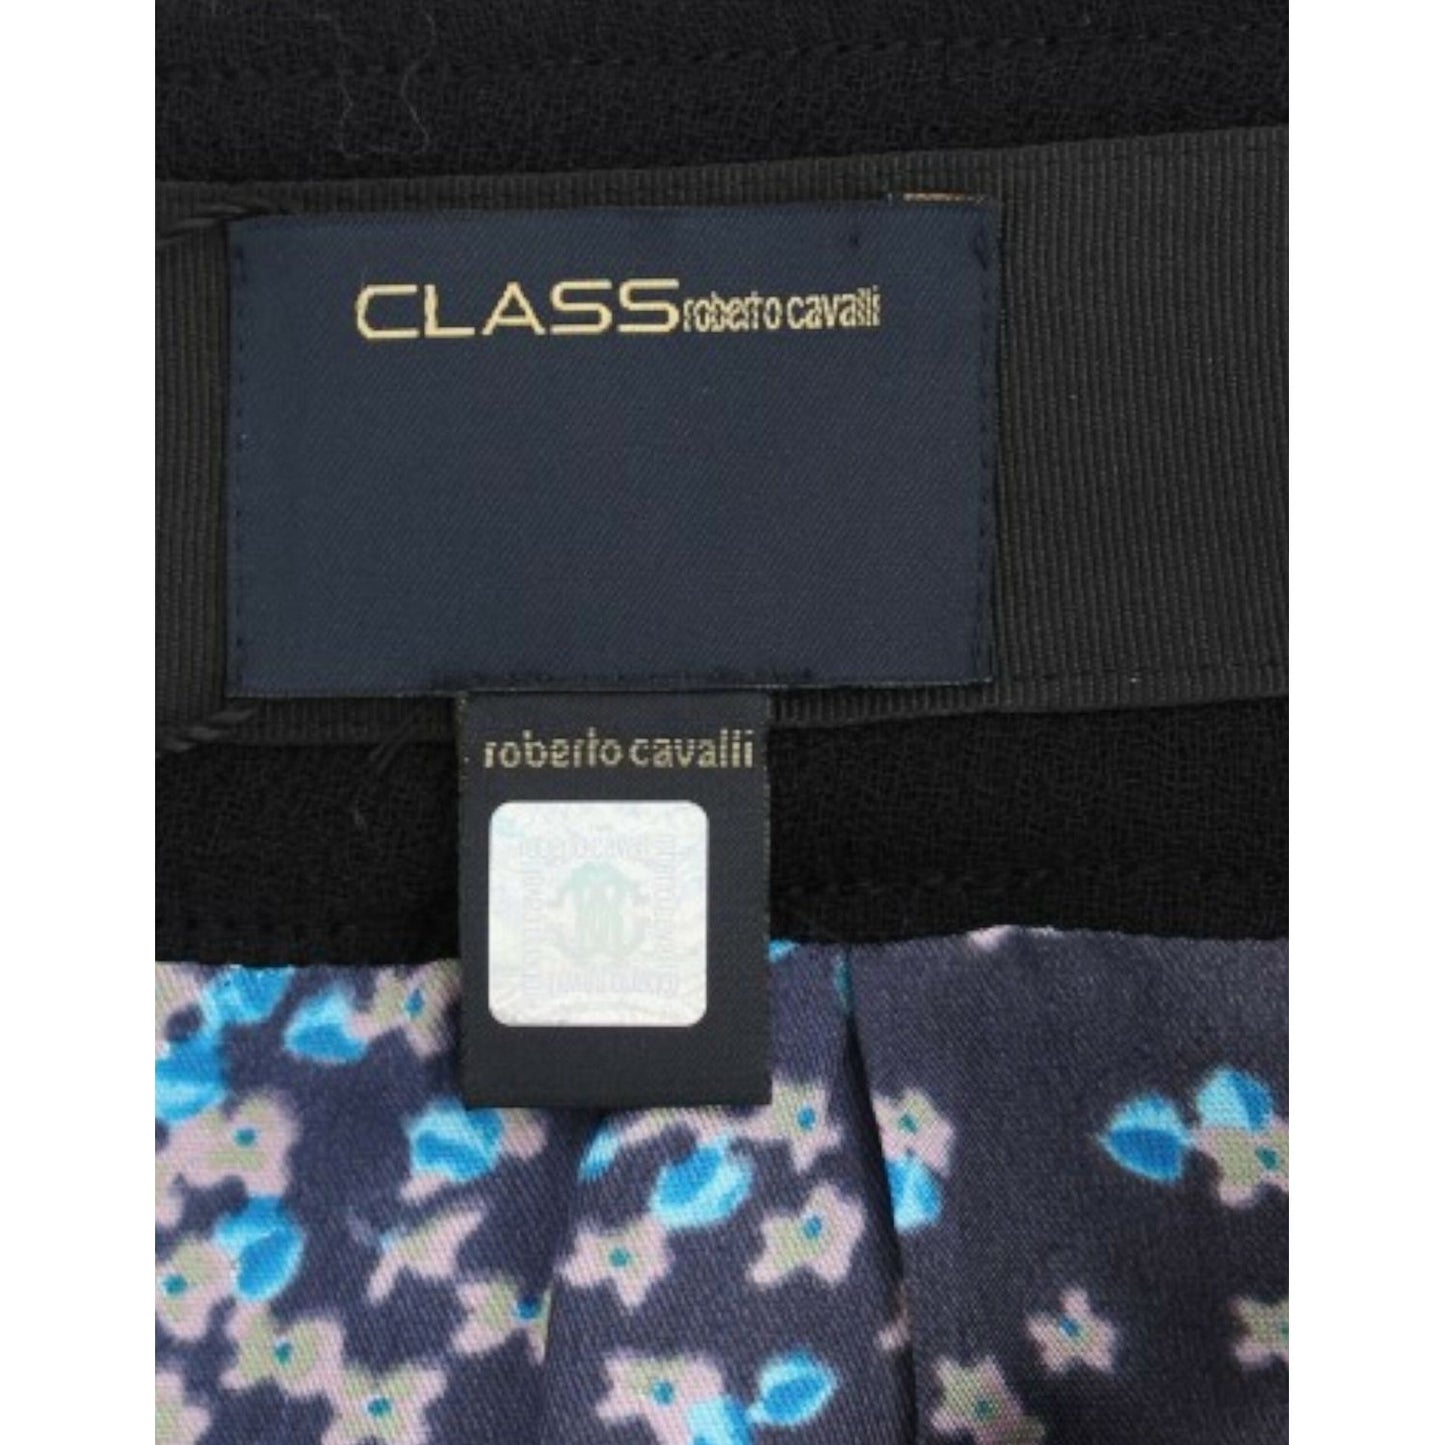 Cavalli Elegant Black Wool Pencil Skirt black-wool-pencil-skirt 9671-black-wool-pencil-skirt-5-scaled-9c928263-ceb.jpg